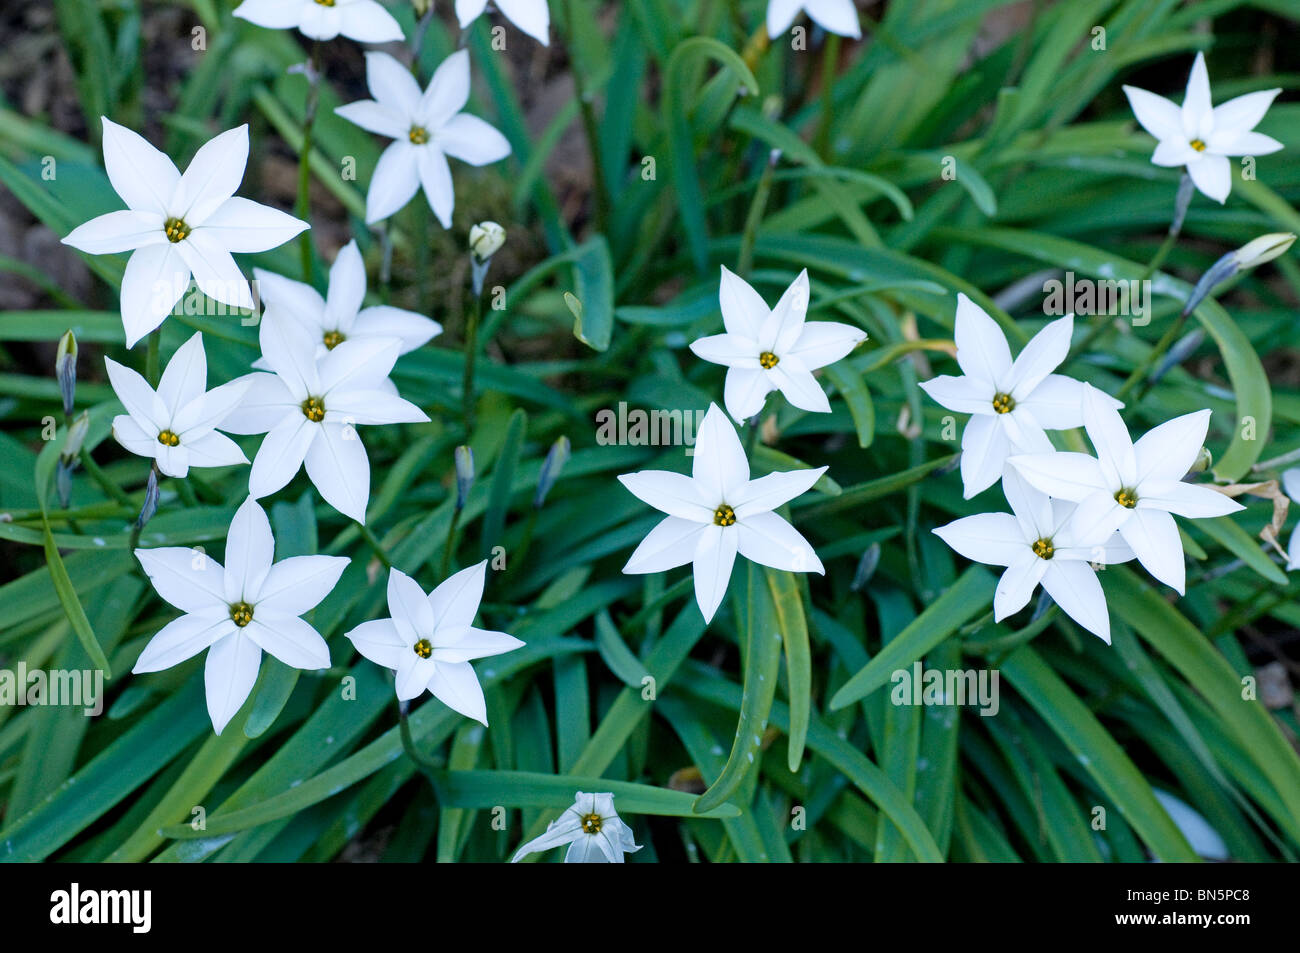 Flowering clump of Ipheion 'Alberto Castillo' Stock Photo